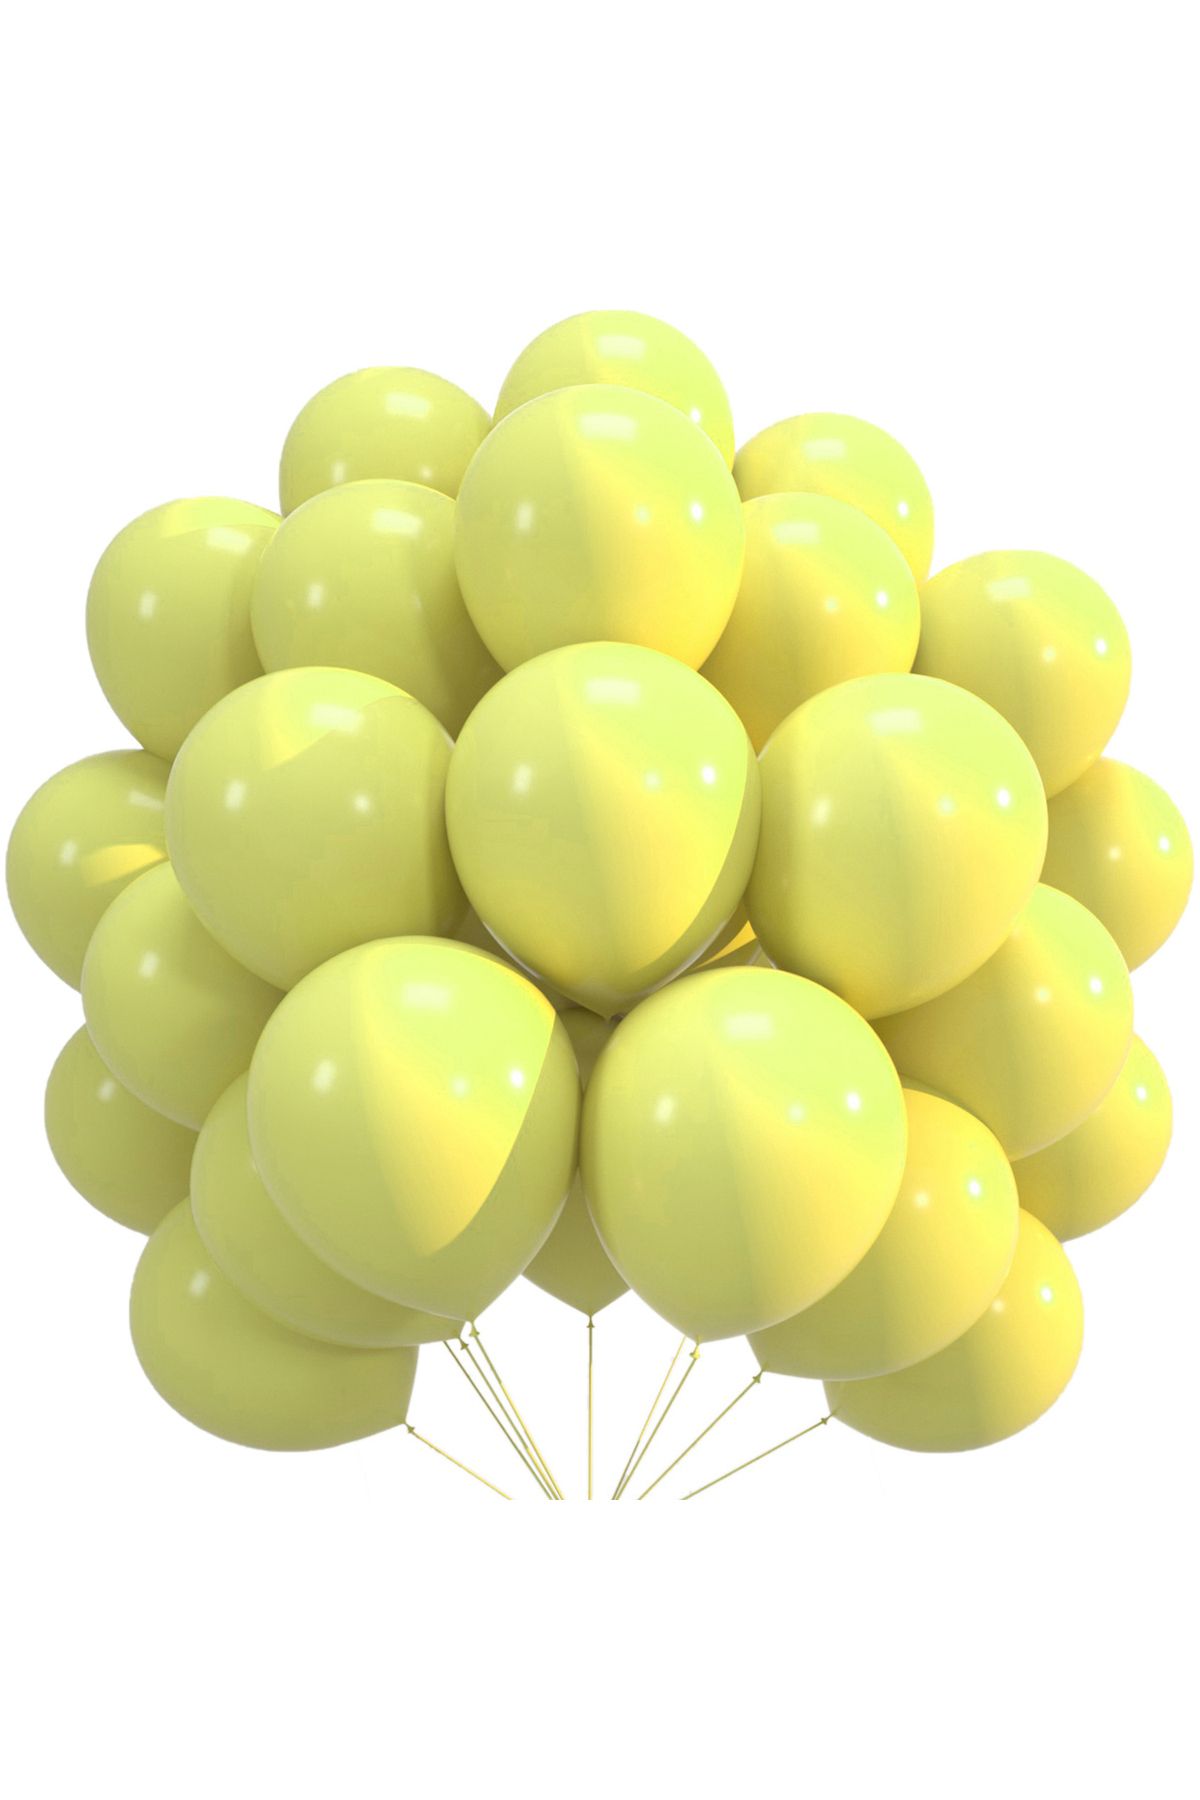 pazariz Lateks Balon Parti Organizasyon Balonu 9/A düğün doğum günü dekorasyon 100 Adet